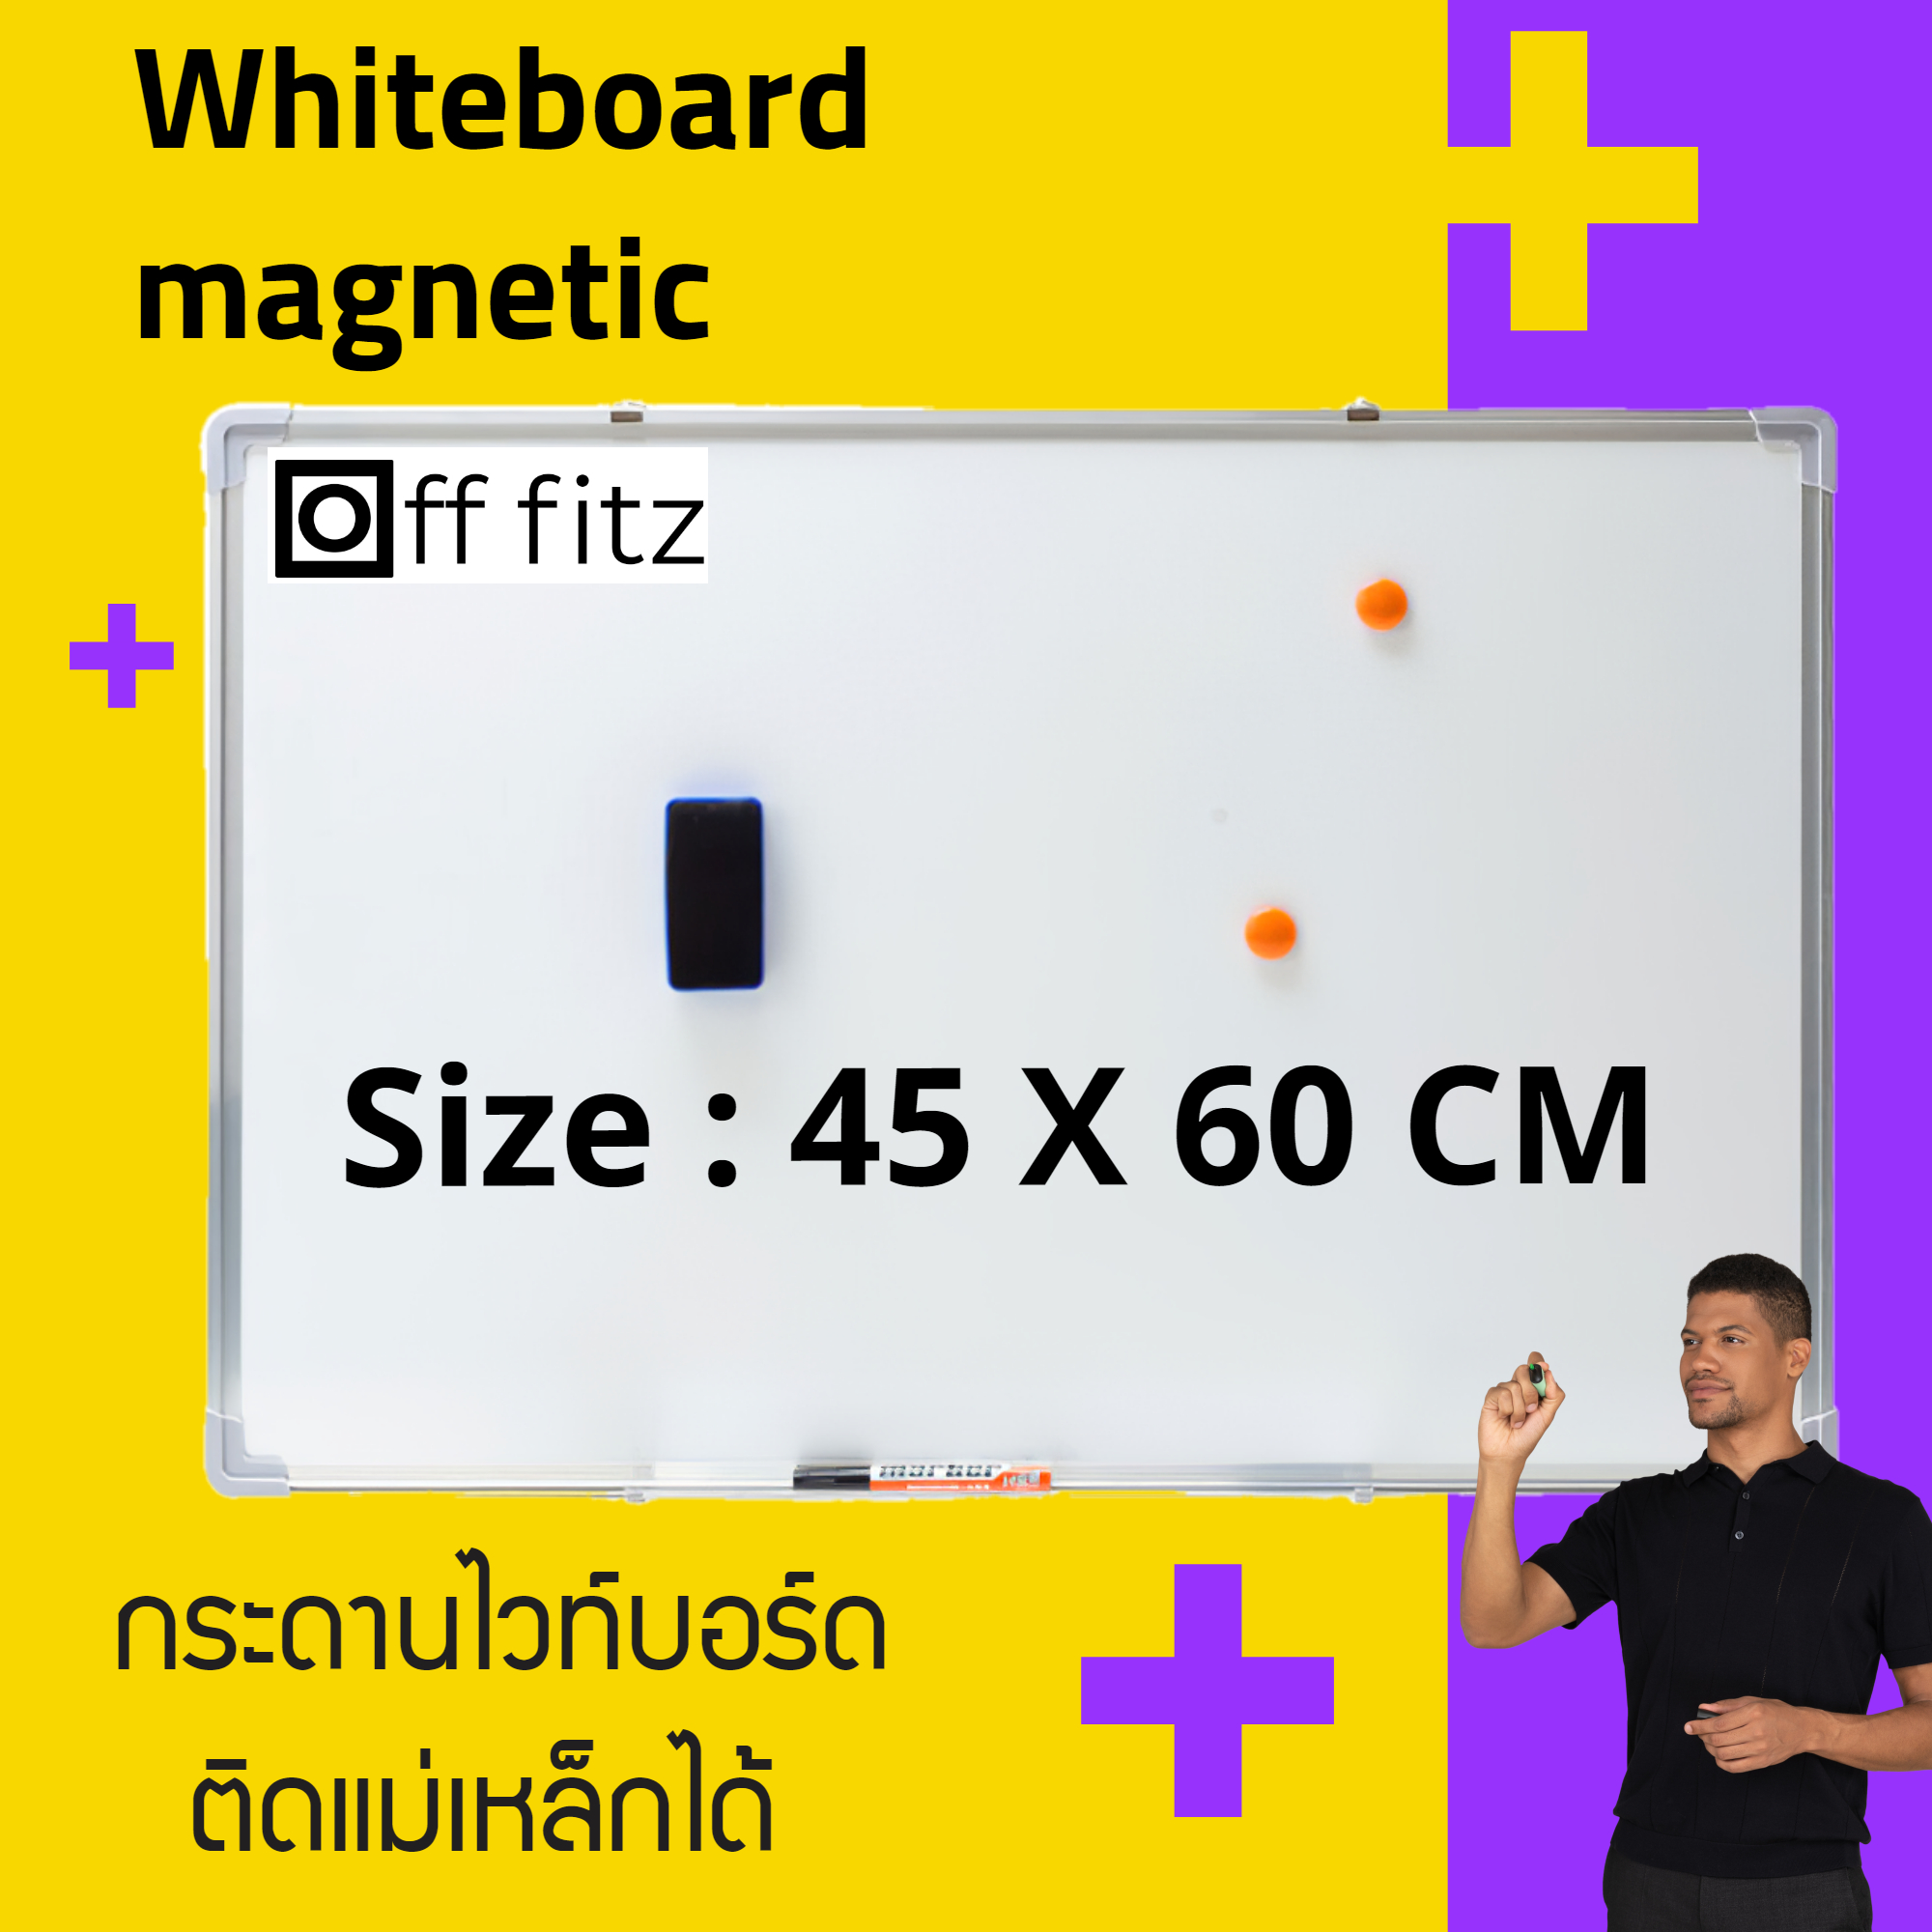 กระดานไวท์บอร์ด กระดานเขียนลบได้ กระดานไวบอร์ด กระดานแม่เหล็ก  แม่เหล็ก  กระดาน ไวท์บอร์ด ราคา ถูก  white board ขนาด 45x60 cm + แถมฟรีอุปกรณ์